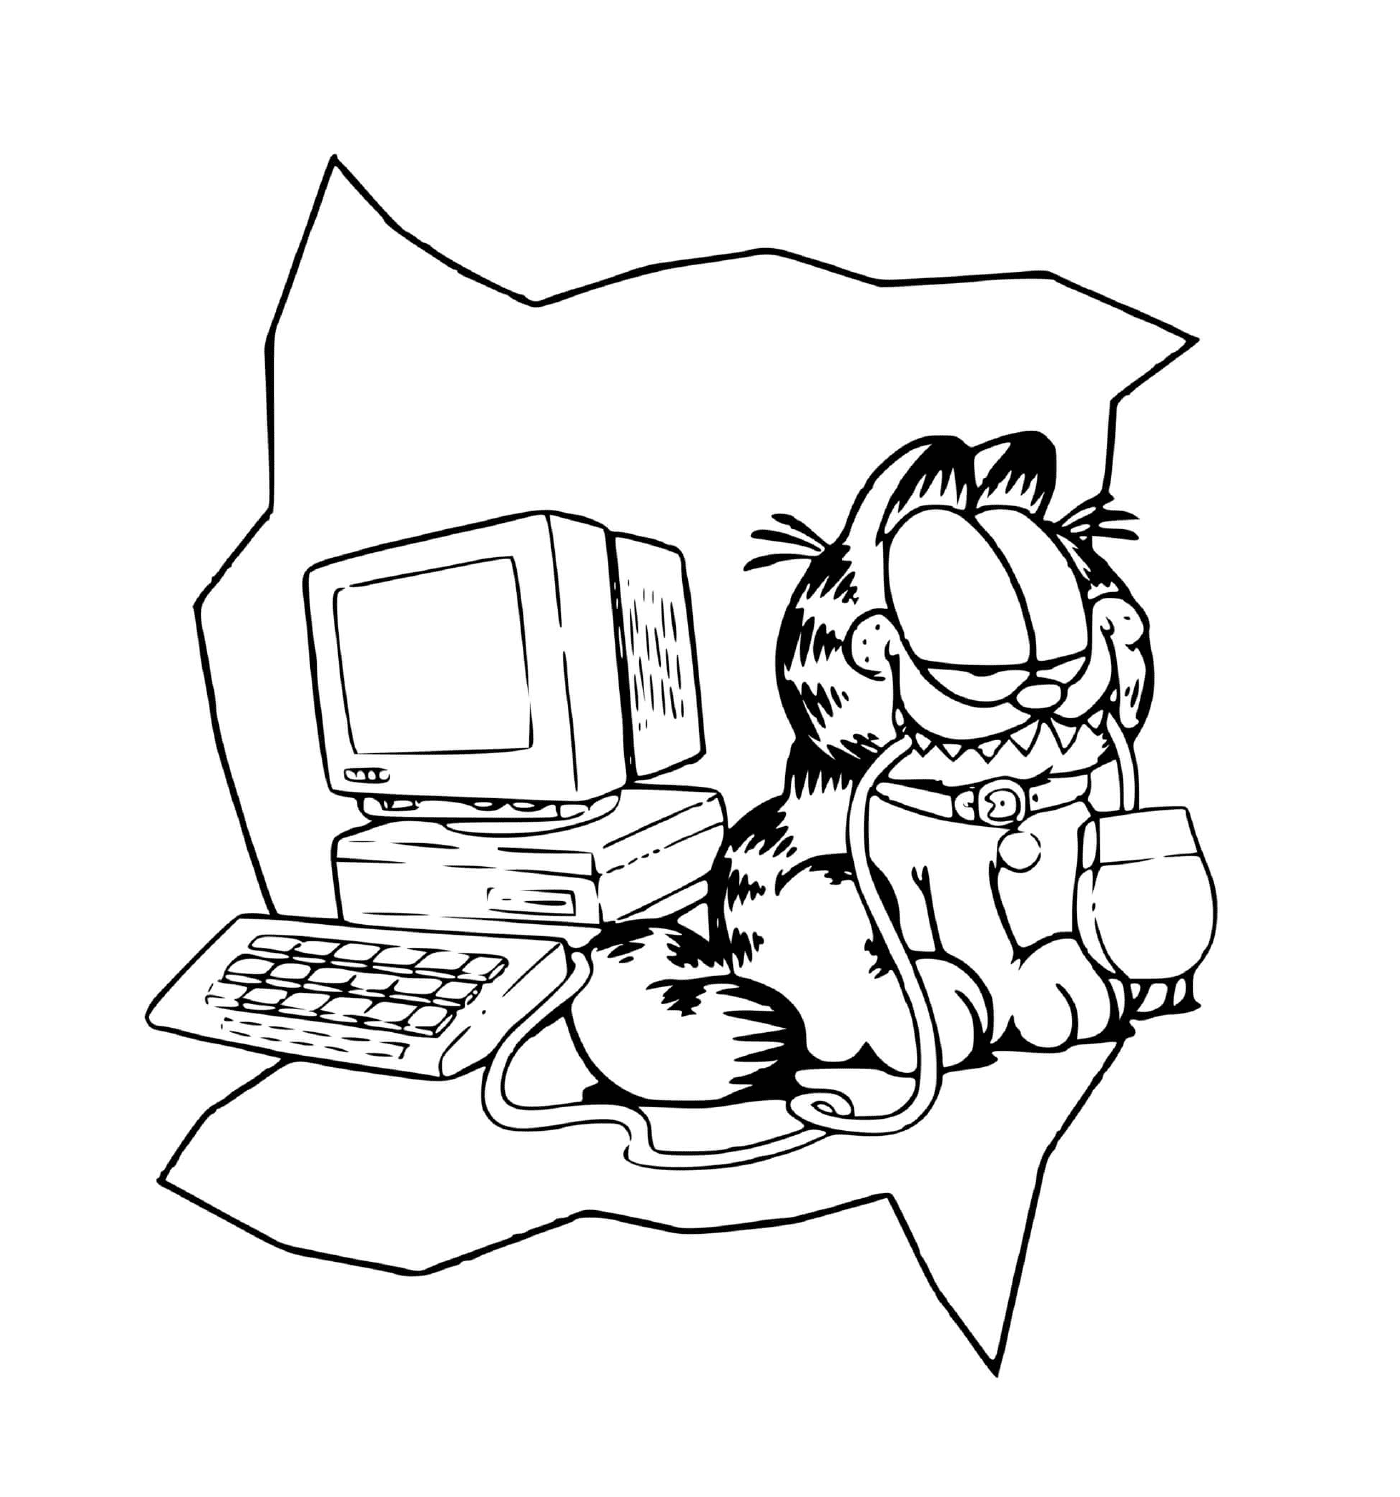   Garfield aime jouer avec un ordinateur 